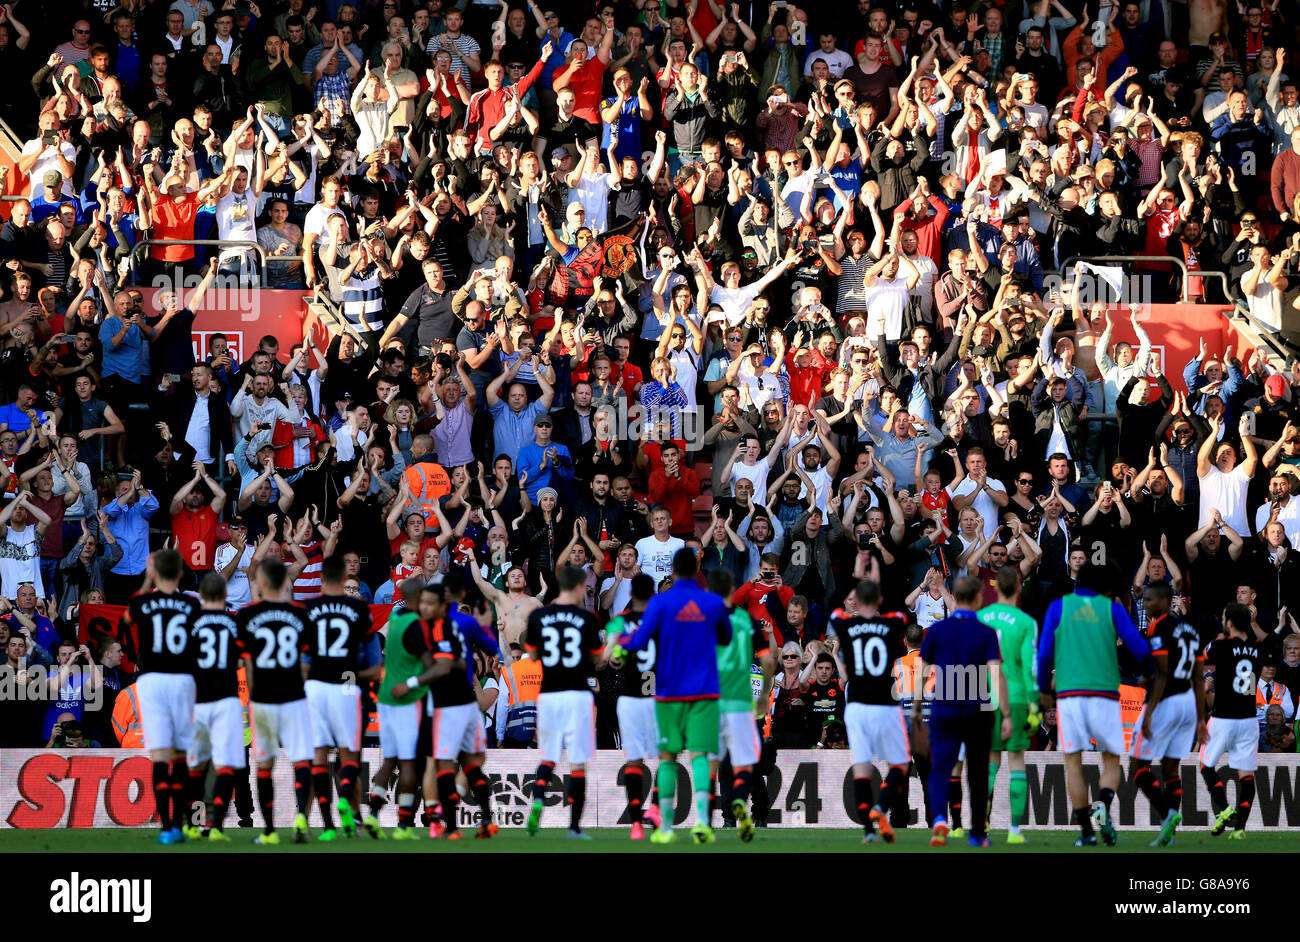 Calcio - Barclays Premier League - Southampton / Manchester United - St Mary's. Il Manchester United festeggia la vittoria davanti ai loro tifosi dopo la partita Foto Stock